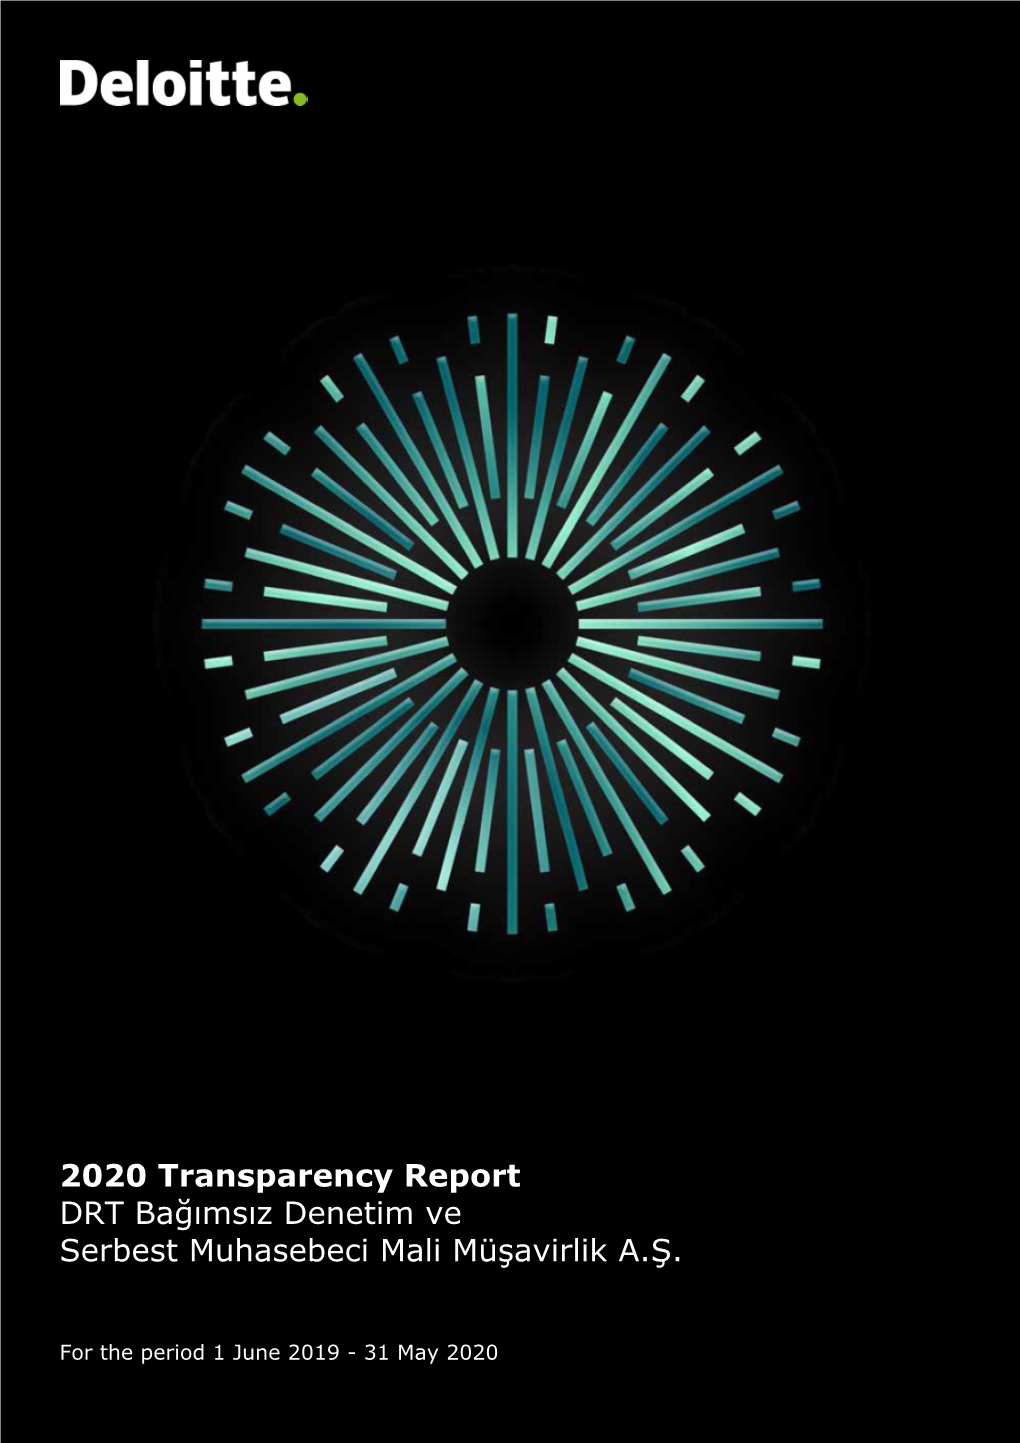 2020 Transparency Report DRT Bağımsız Denetim Ve Serbest Muhasebeci Mali Müşavirlik A.Ş